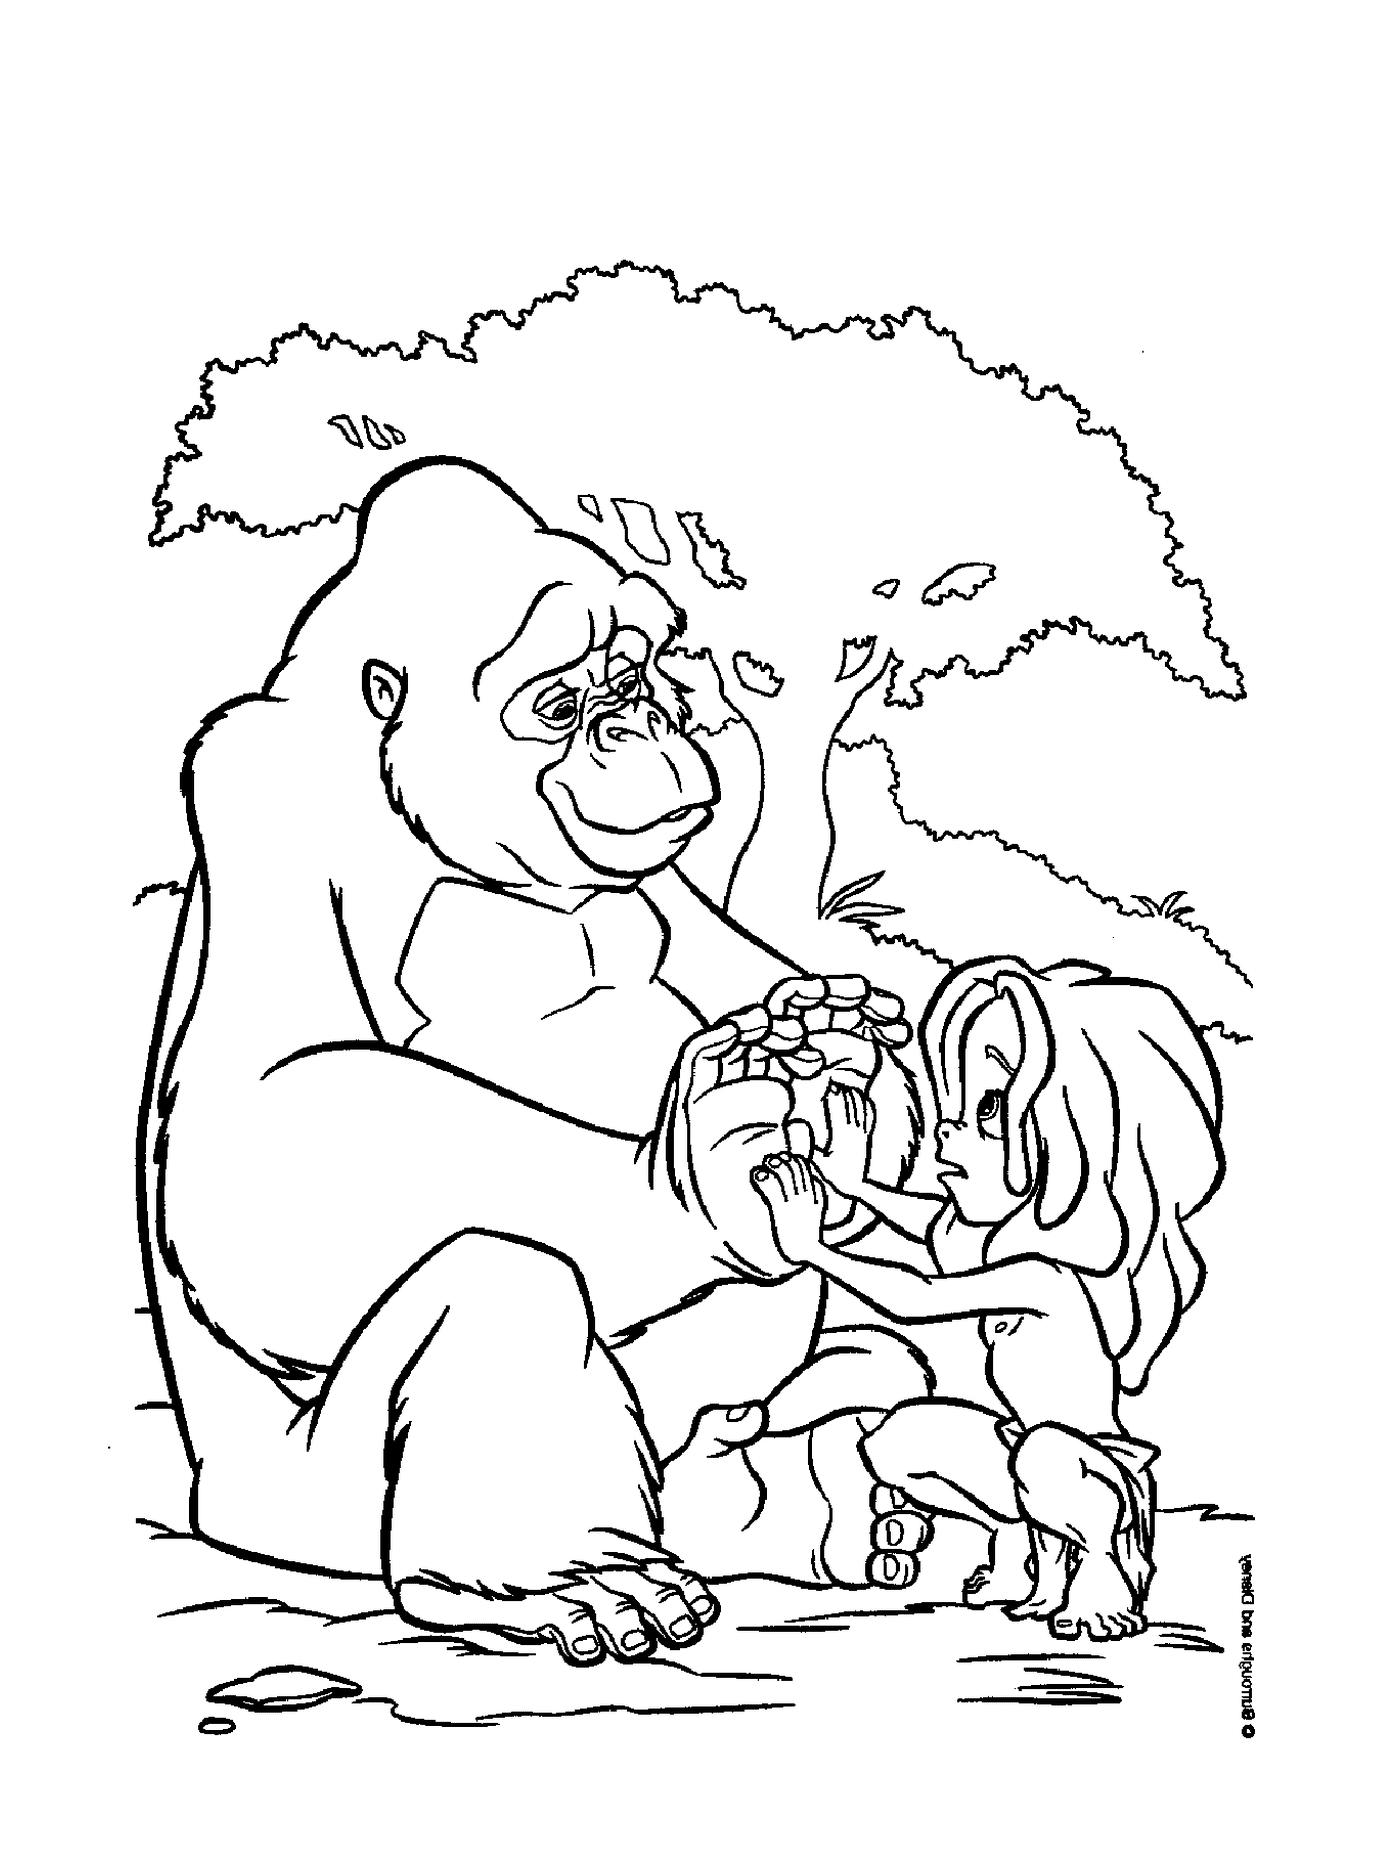  Adulto e criança brincando com um gorila 